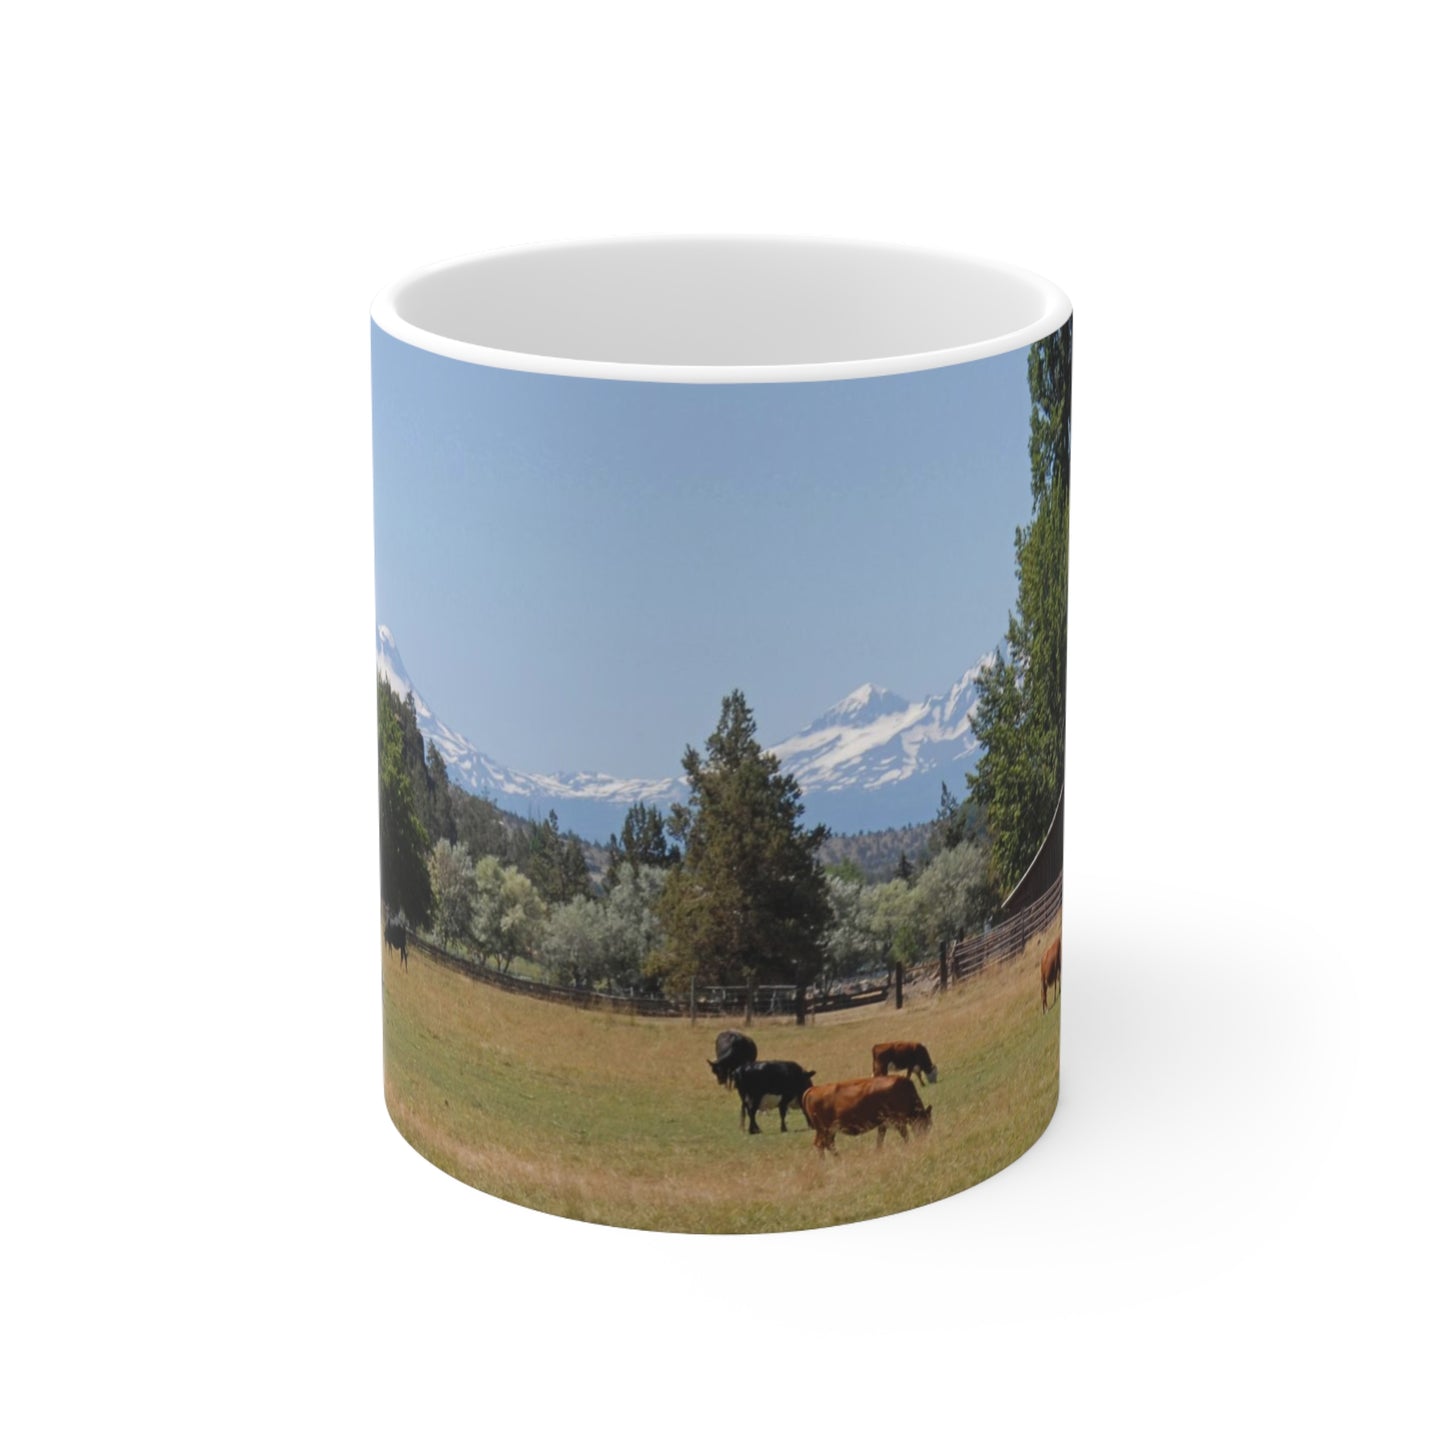 Picturesque Cattle Ceramic Mug 11oz